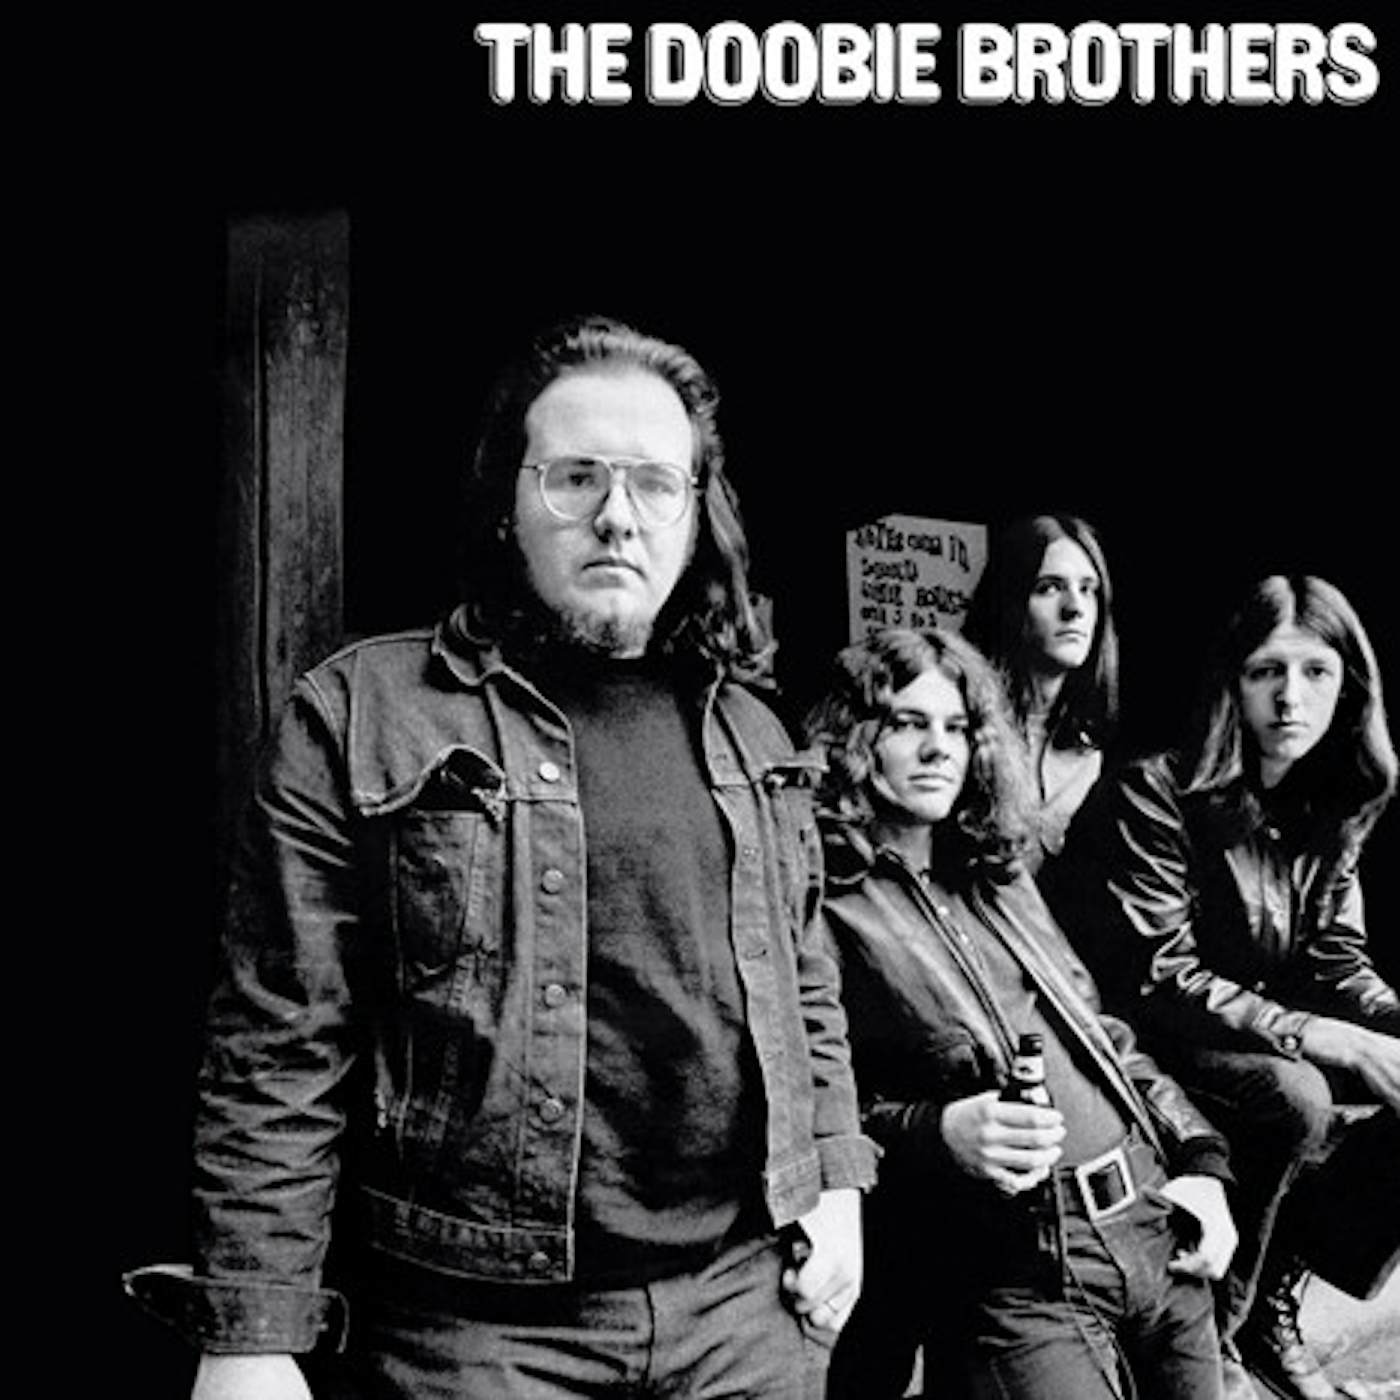 The Doobie BrothersVinyl Record